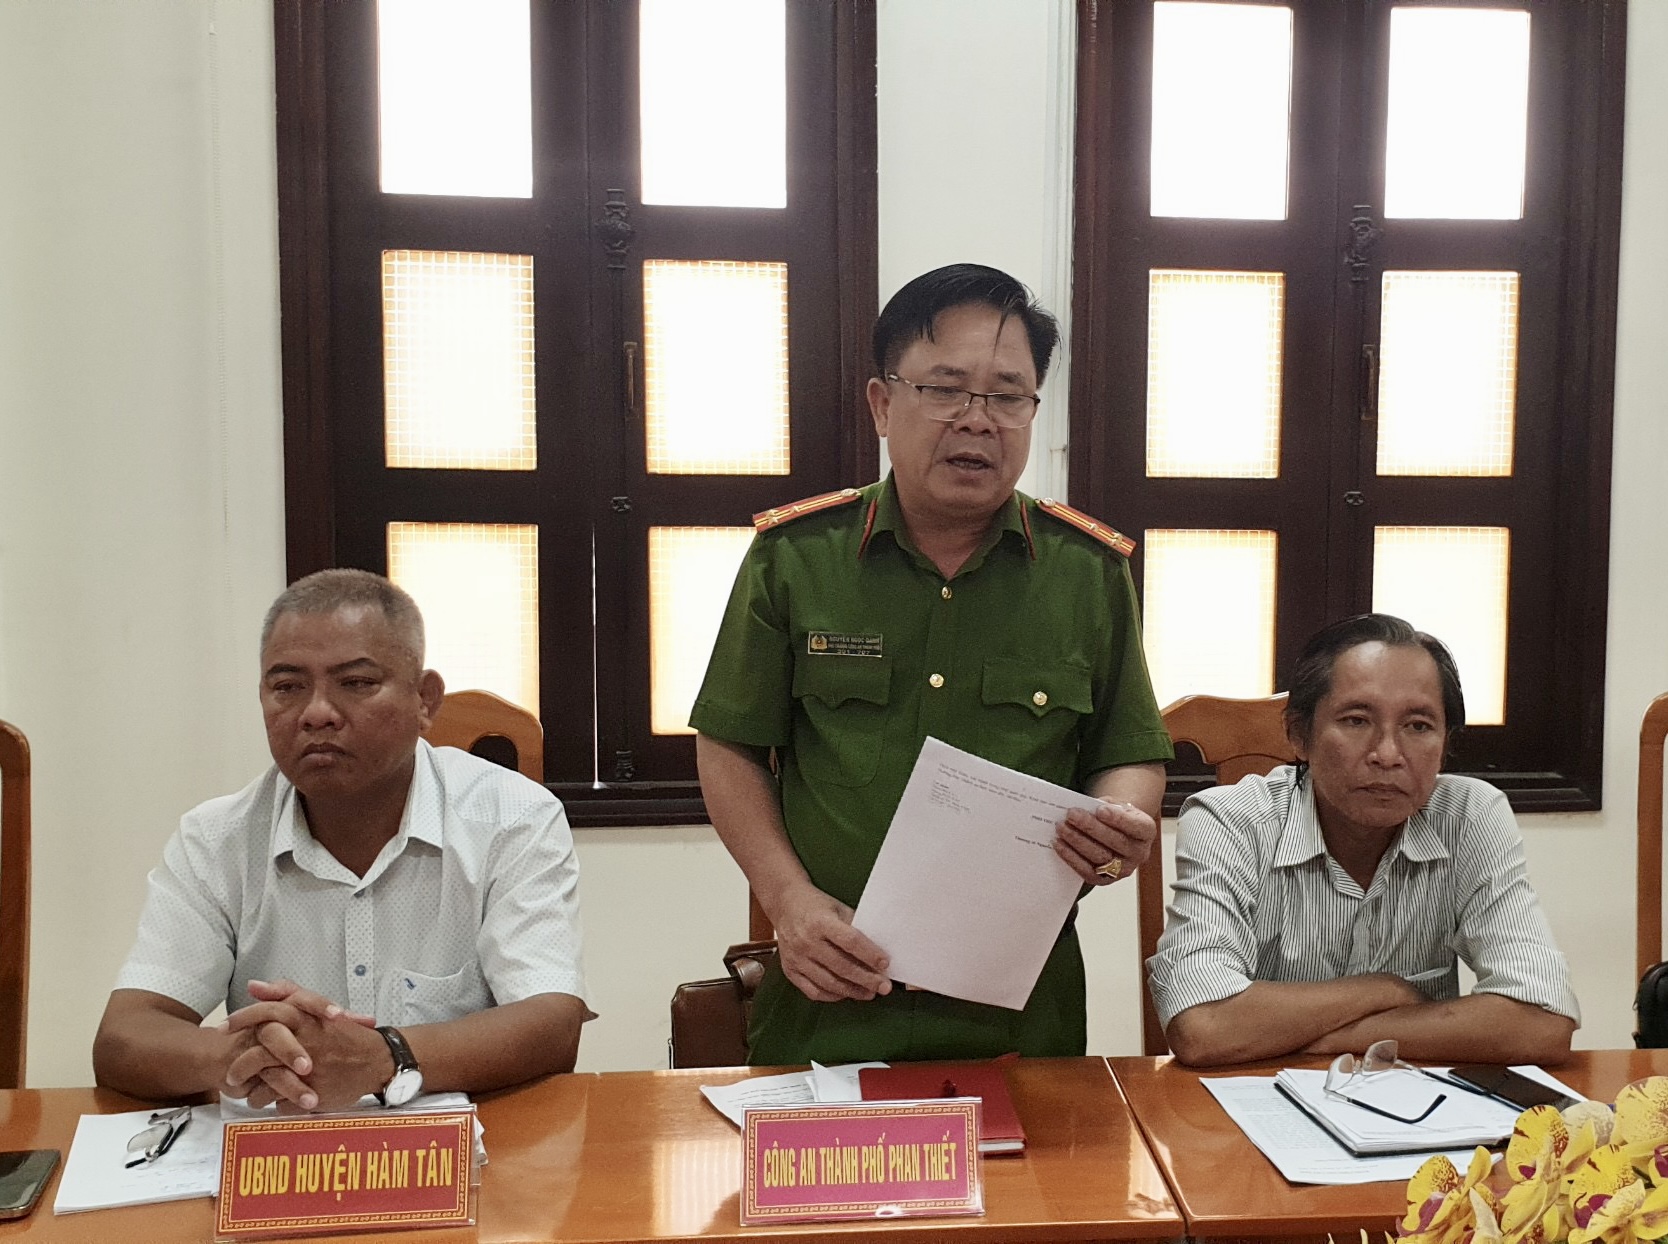 Thượng tá Nguyễn Ngọc Oanh thông tin về tiến độ, kết quả giải quyết các đơn tố giác liên quan đến N.T.V.A. Ảnh: DT